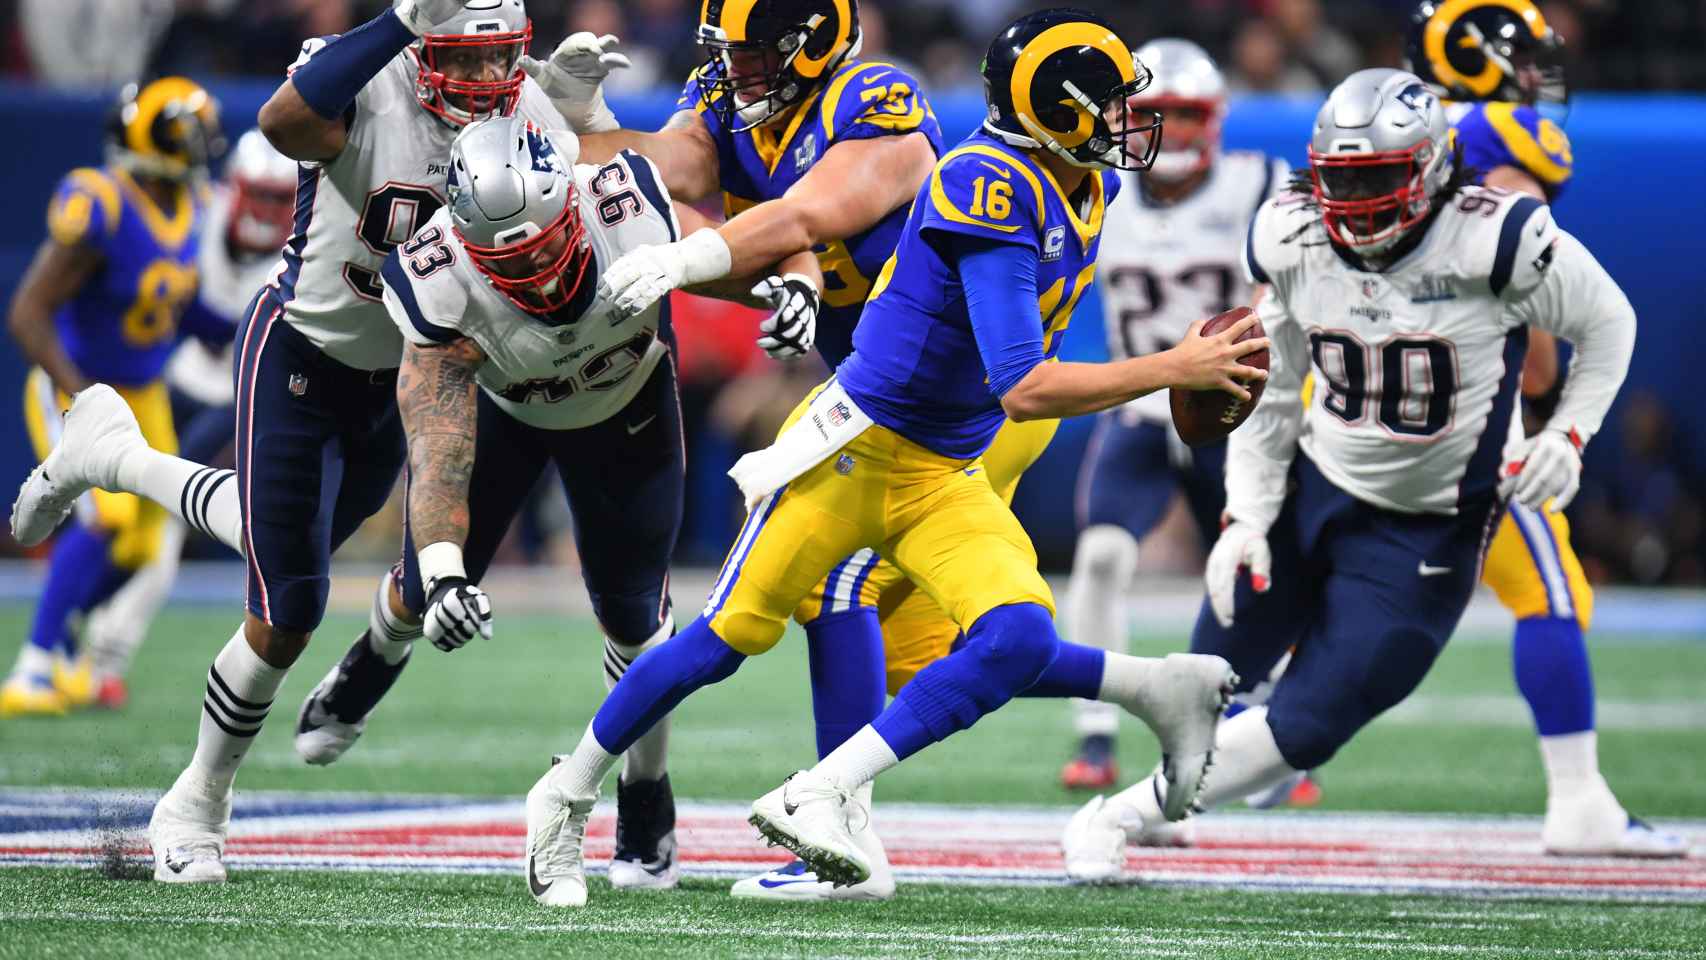 Siga la Super Bowl 2019 en directo: Los Angeles Rams - New England Patriots1706 x 960